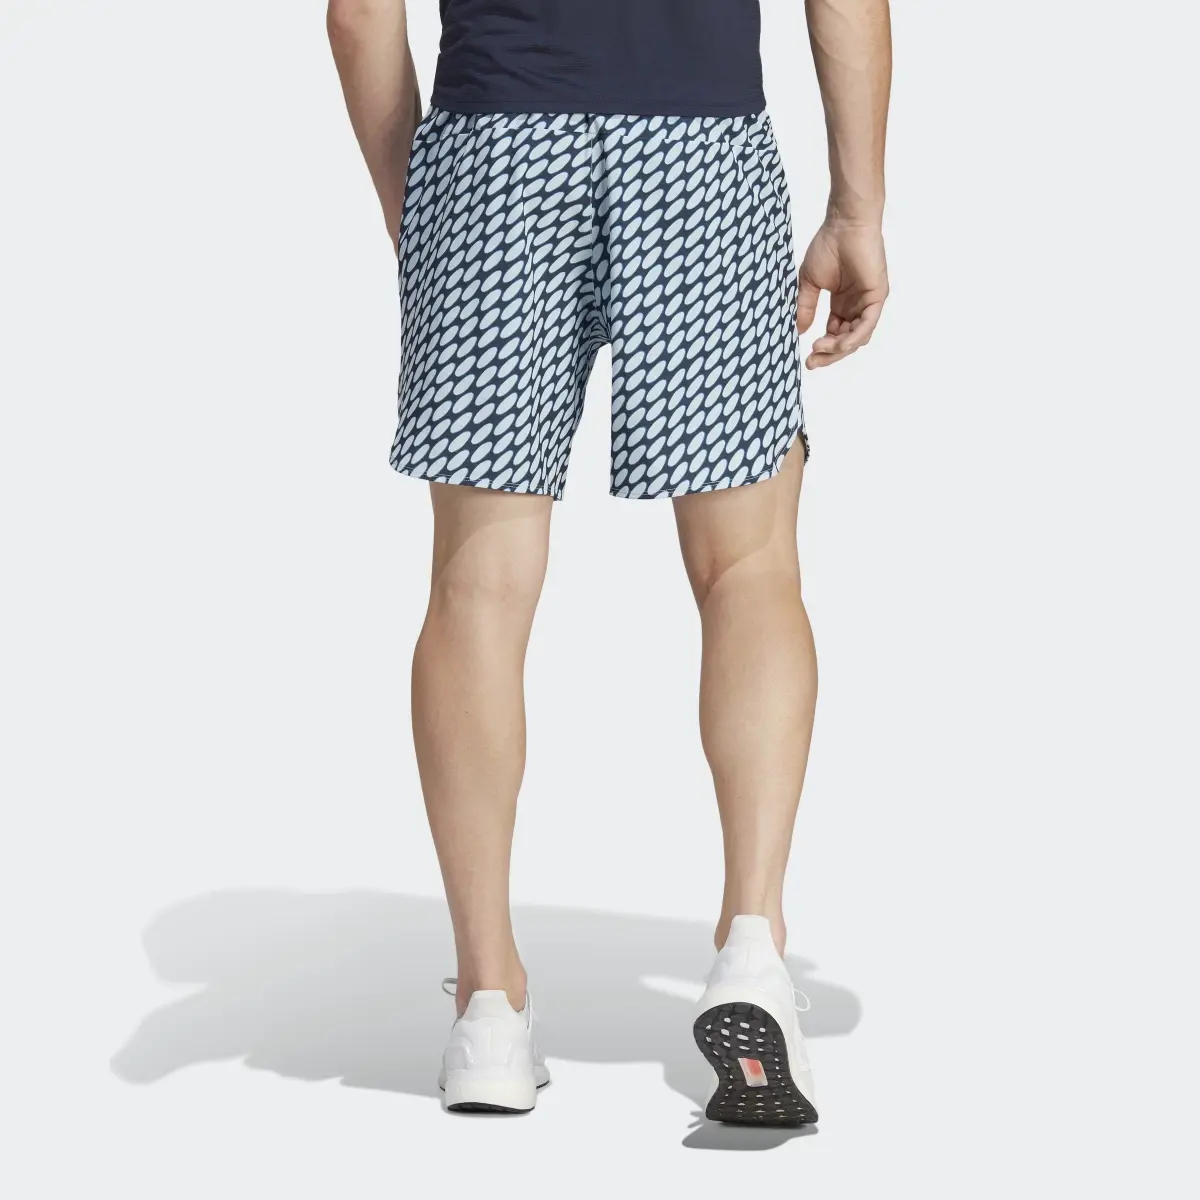 Adidas x Marimekko Designed for Training Shorts. 2